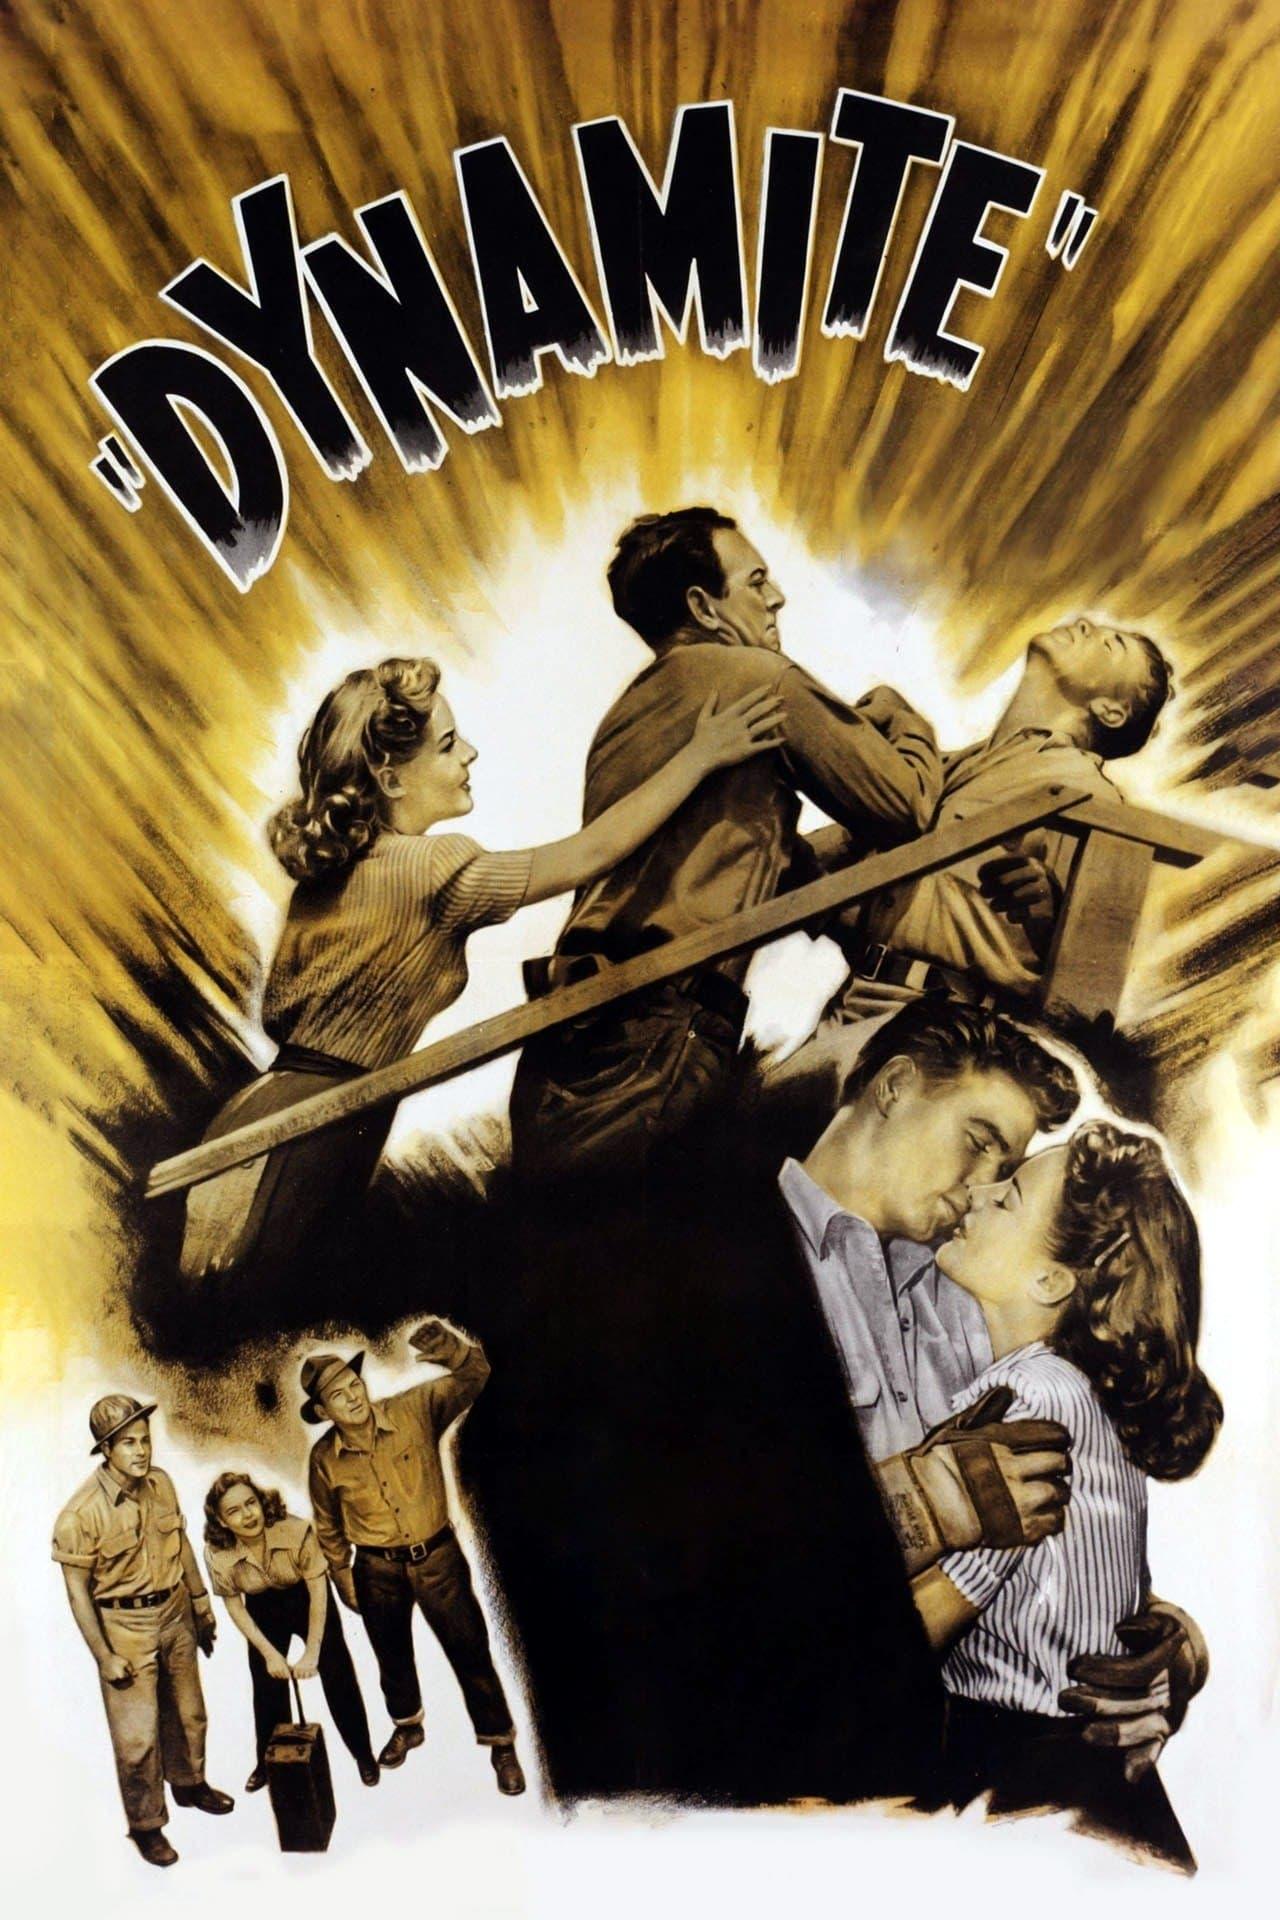 Dynamite poster